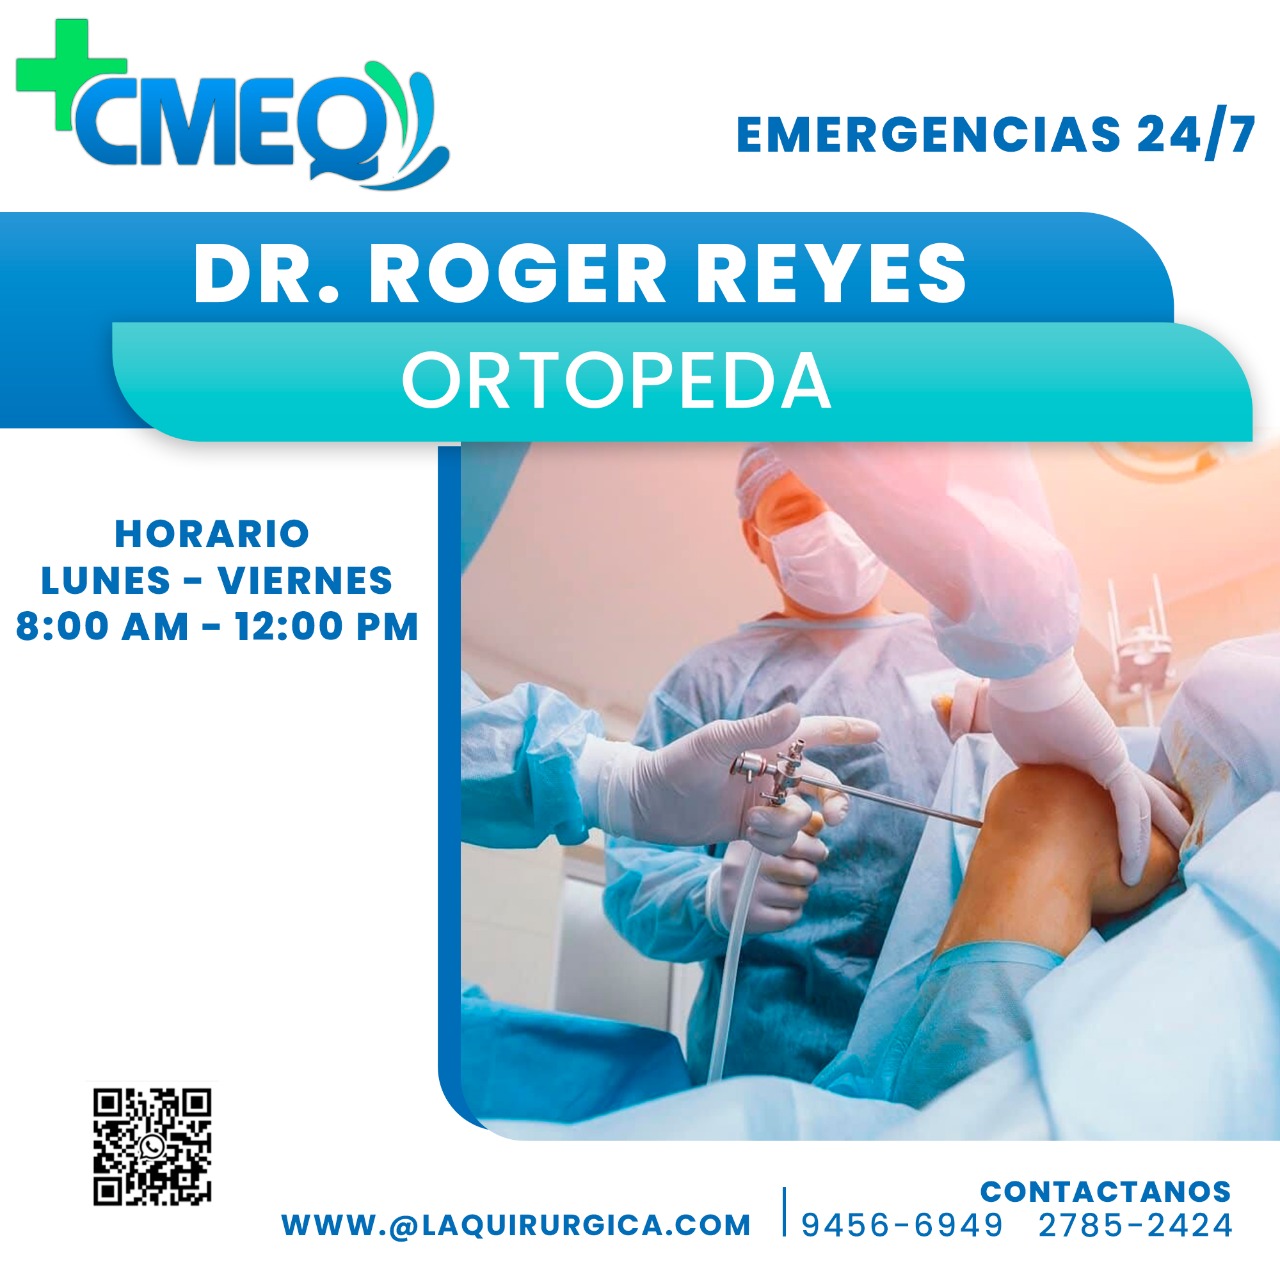 Dr. Roger Reyes